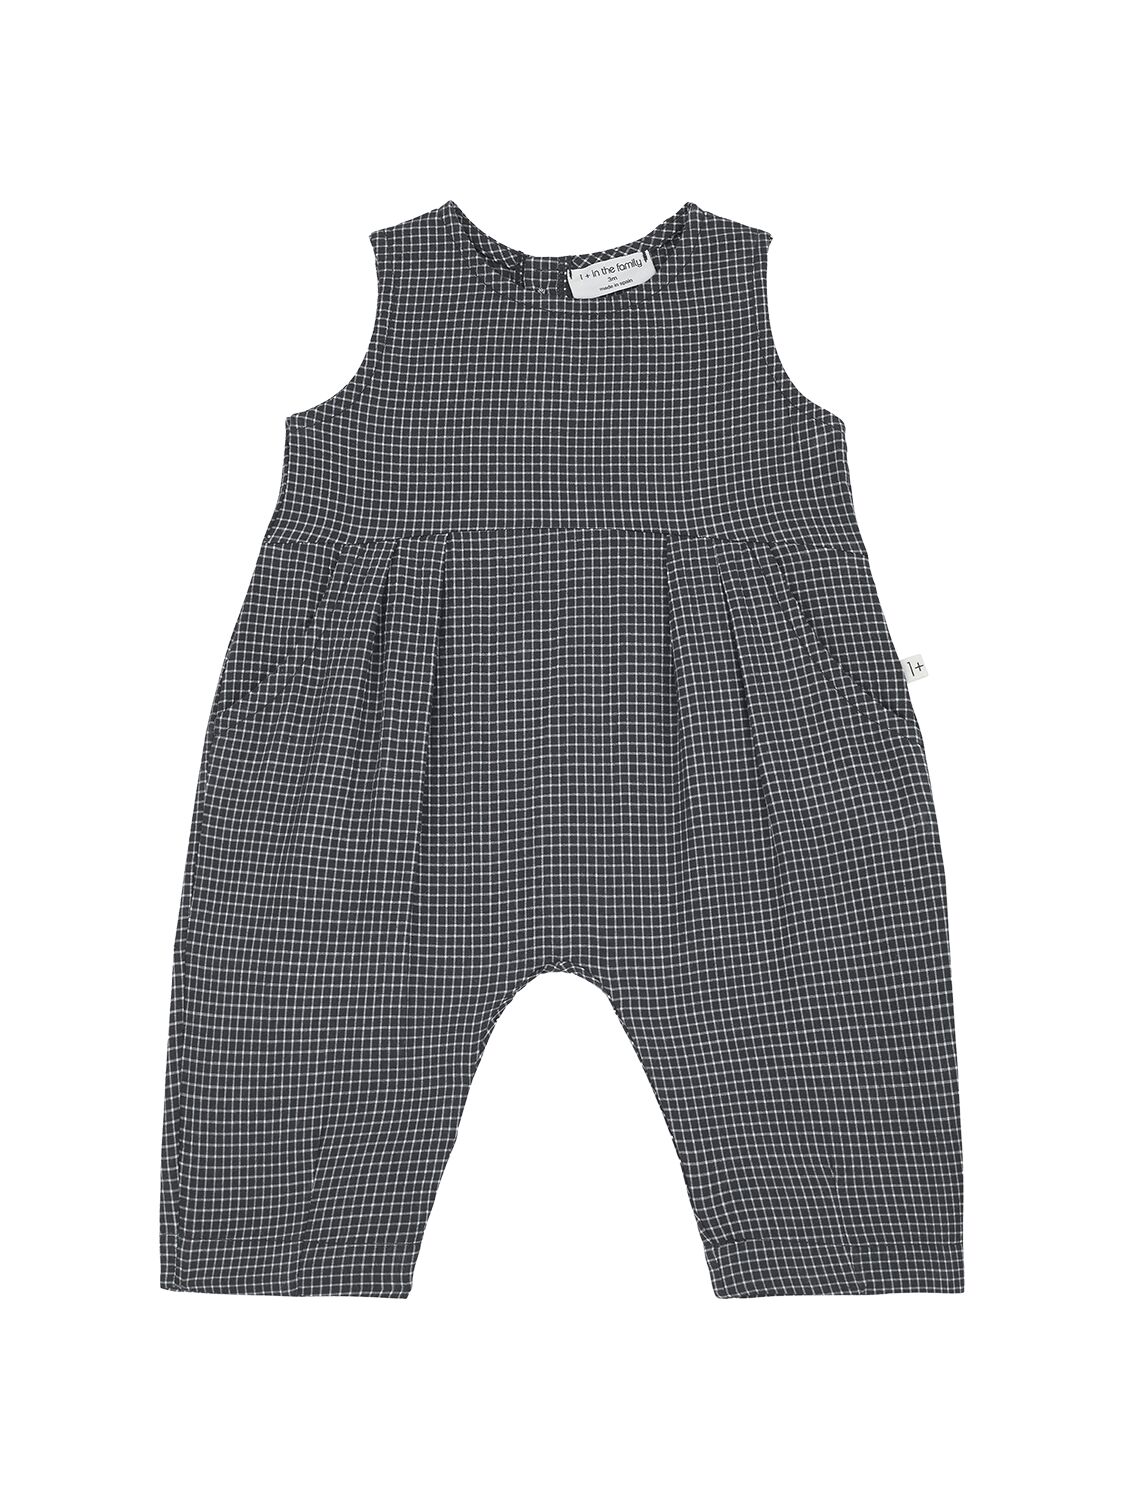 1+ In The Family Babies' Cotton Seersucker Overalls In Gray